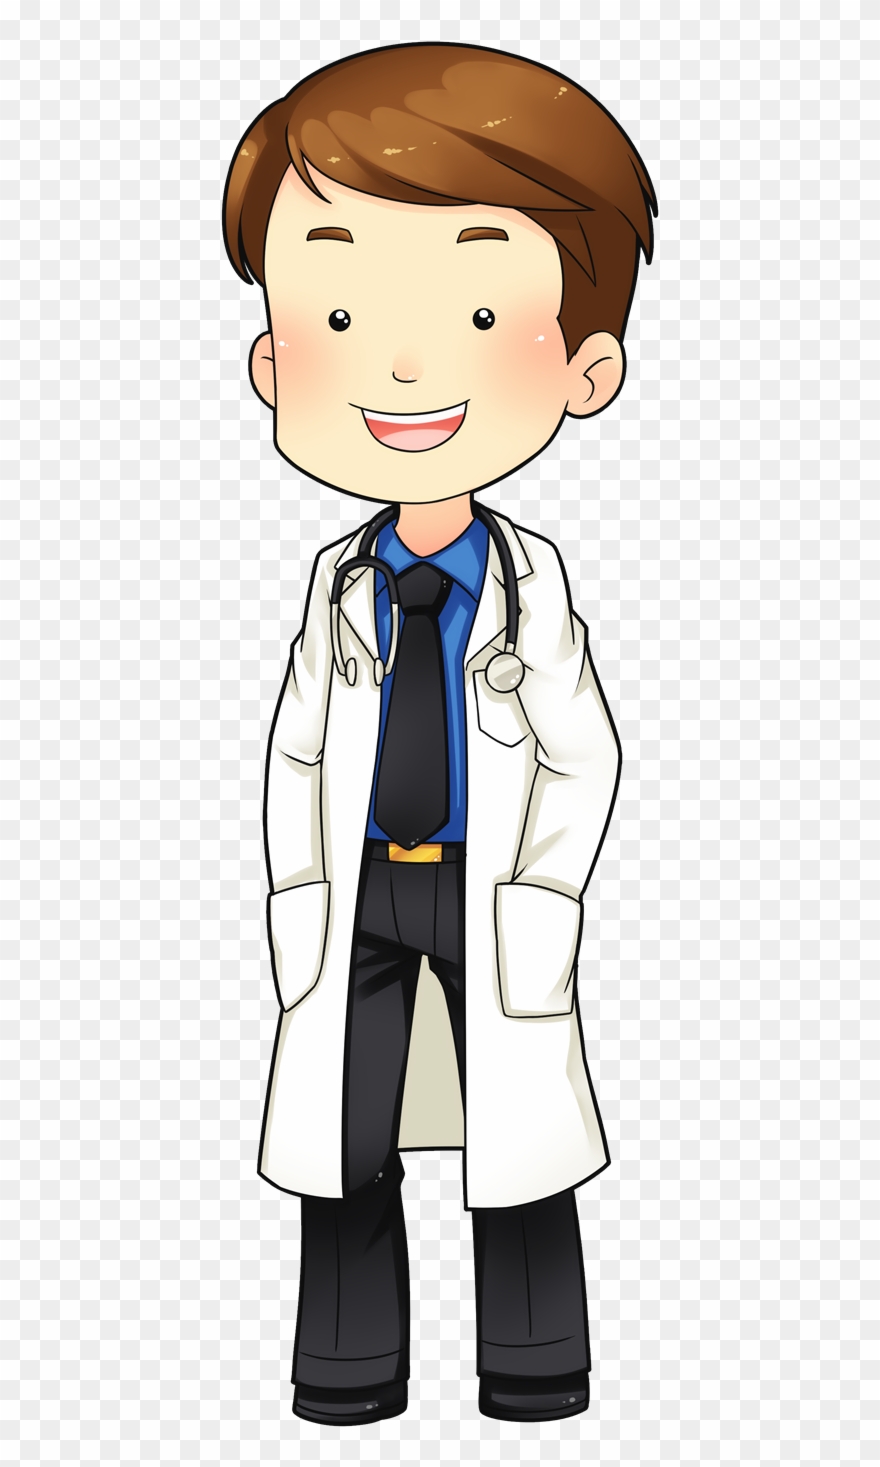 Cute cute doctor.